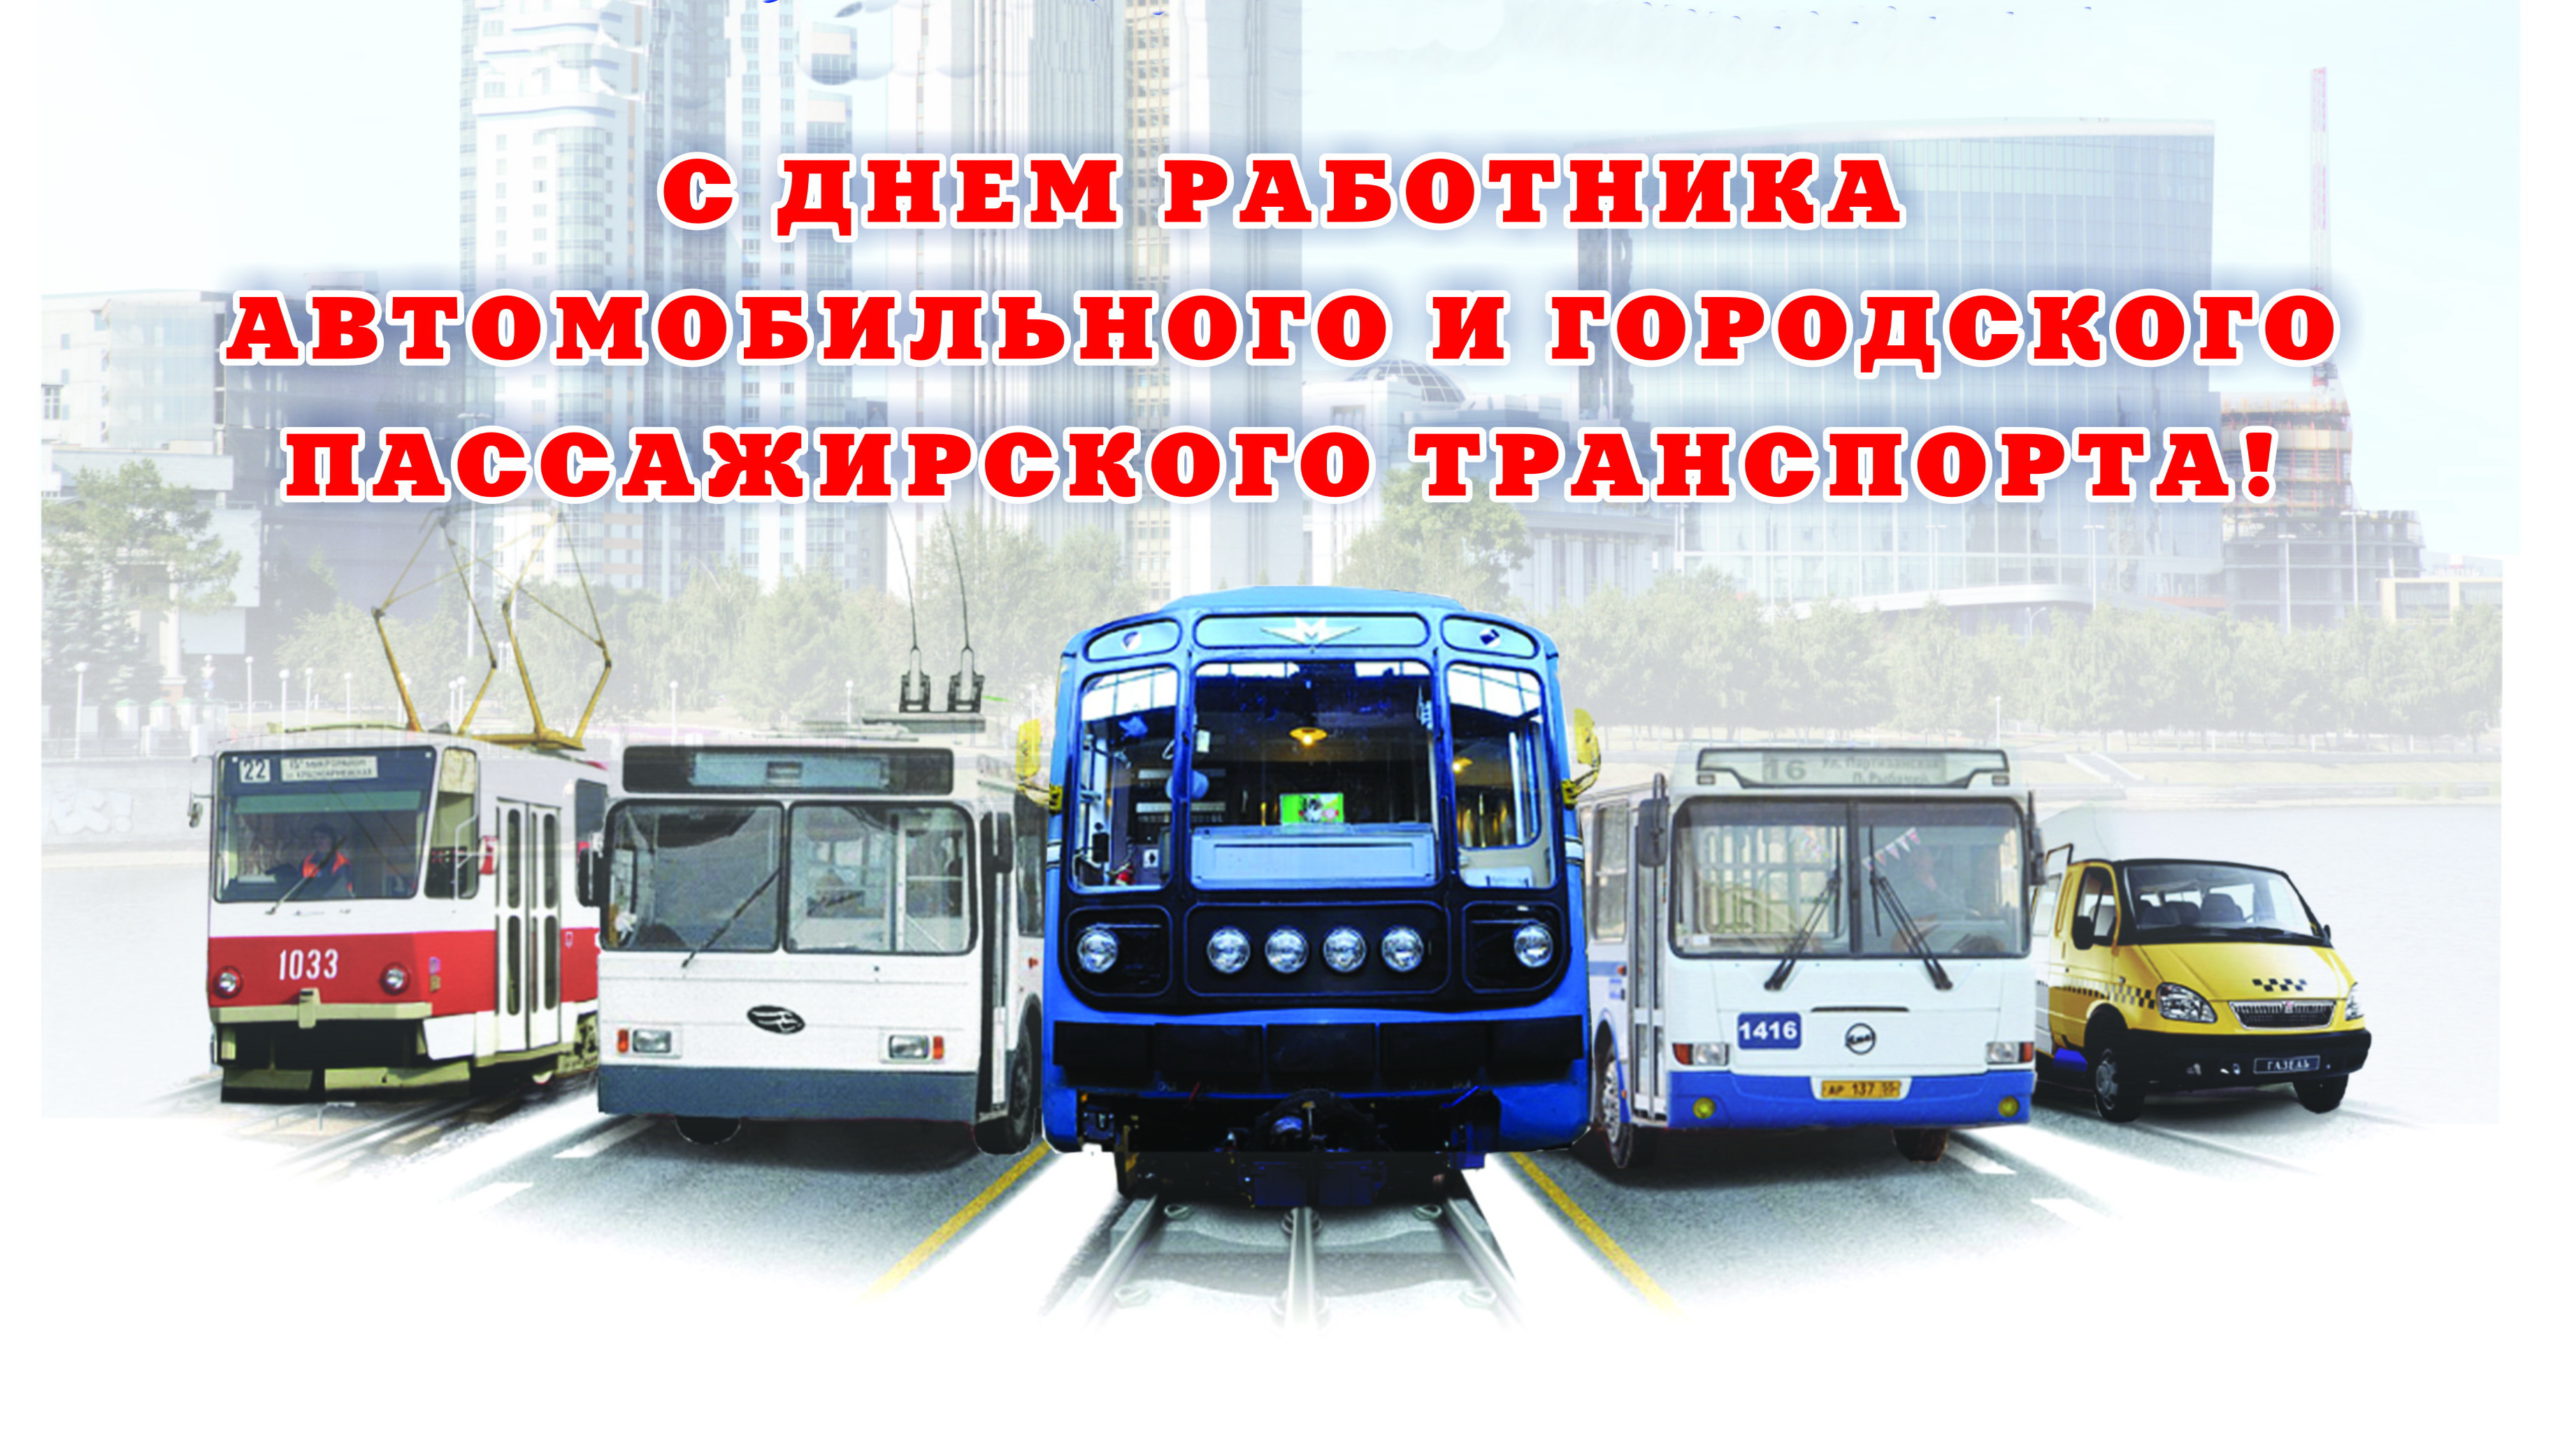 Право городской транспорт